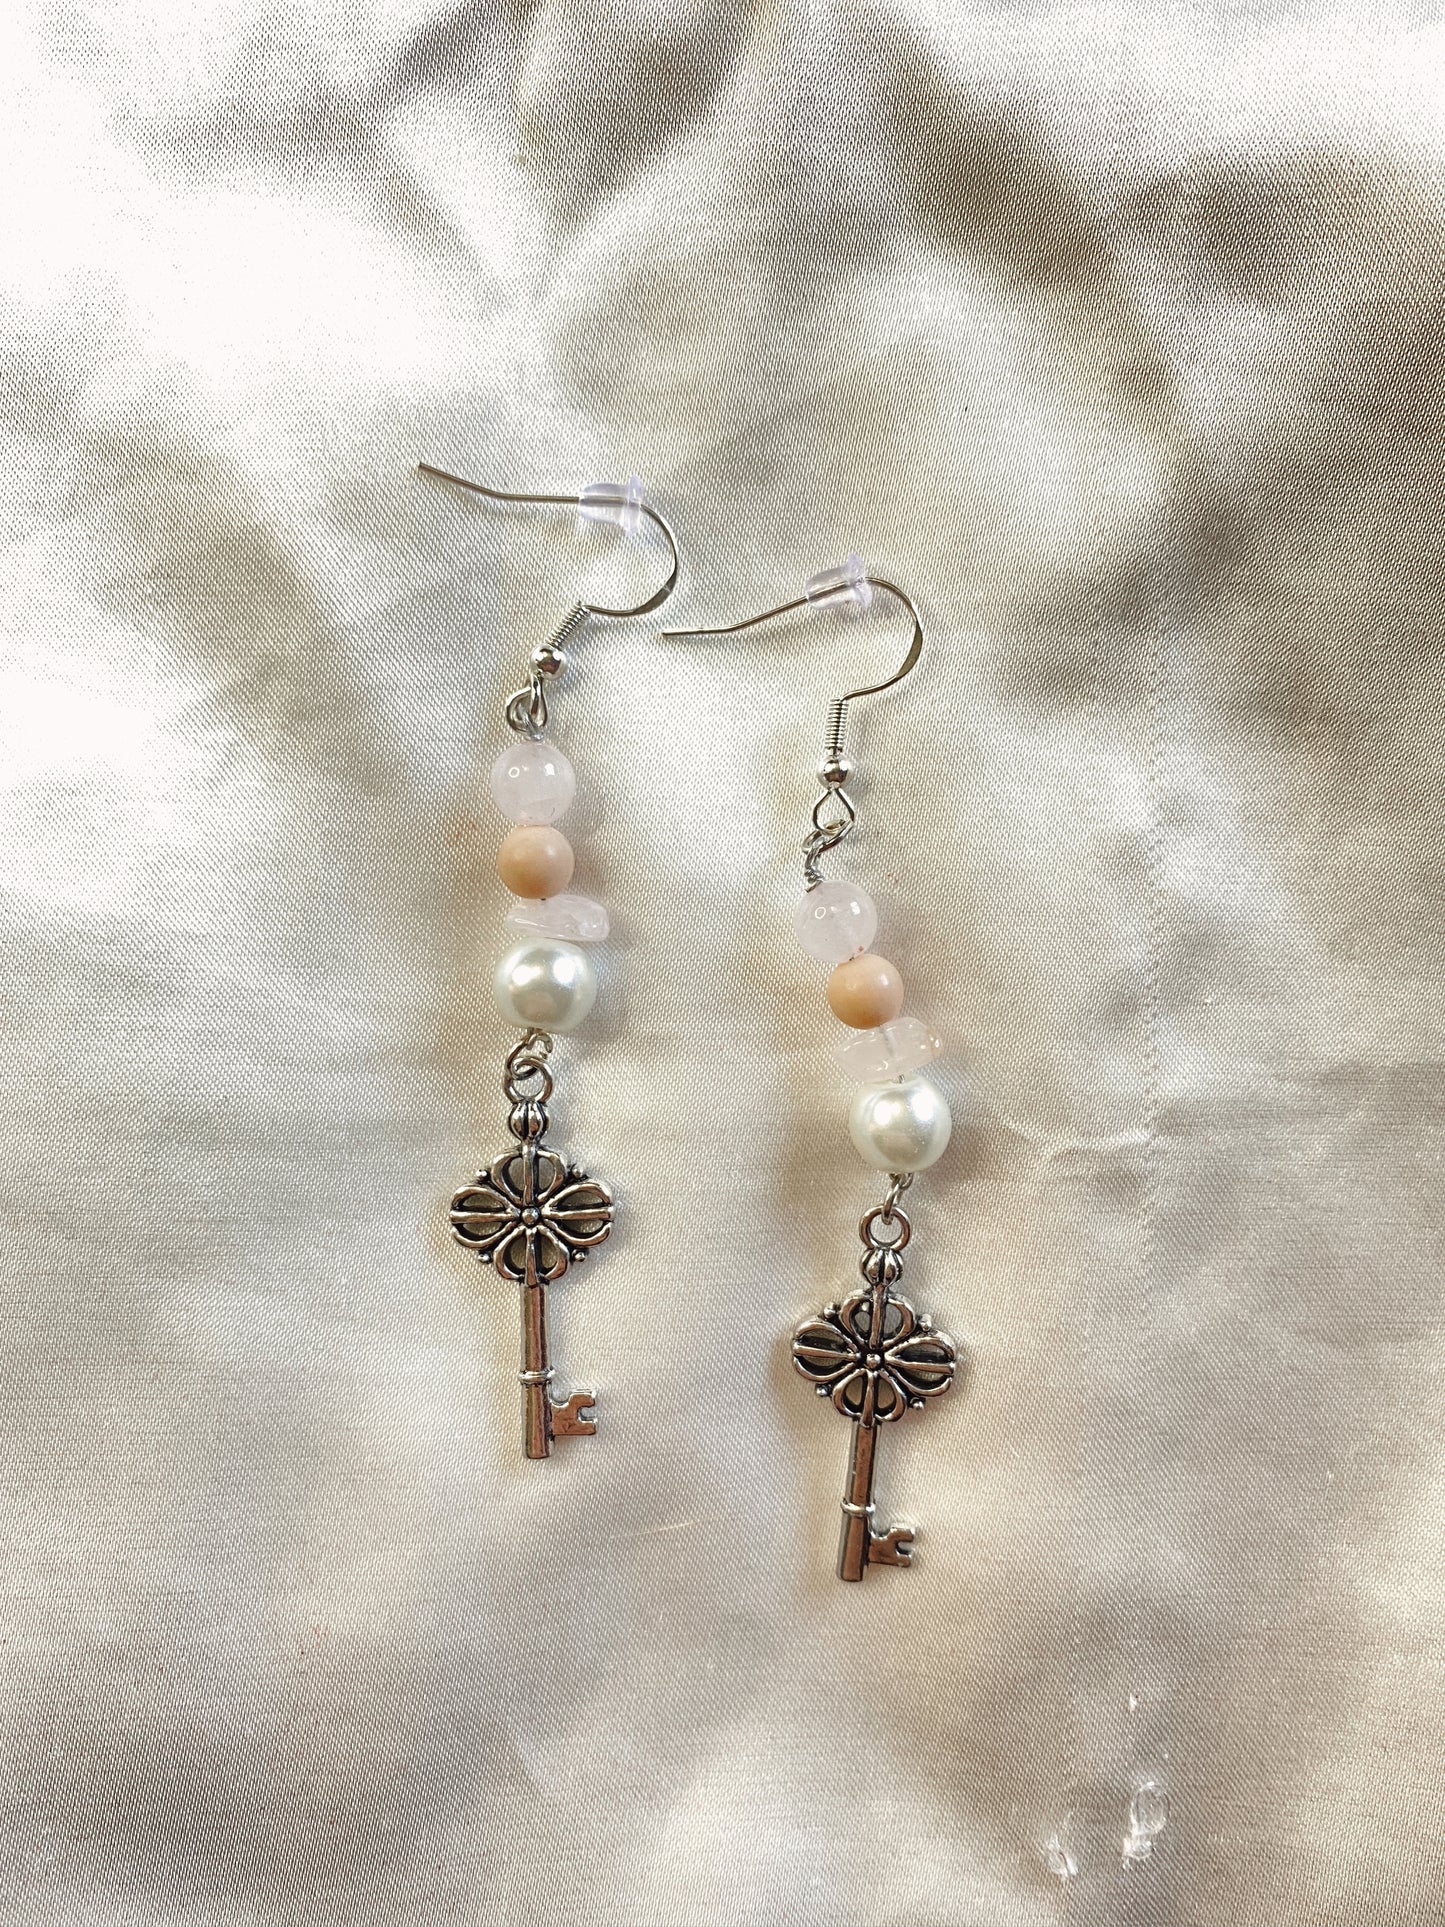 “Pastel Key” earrings